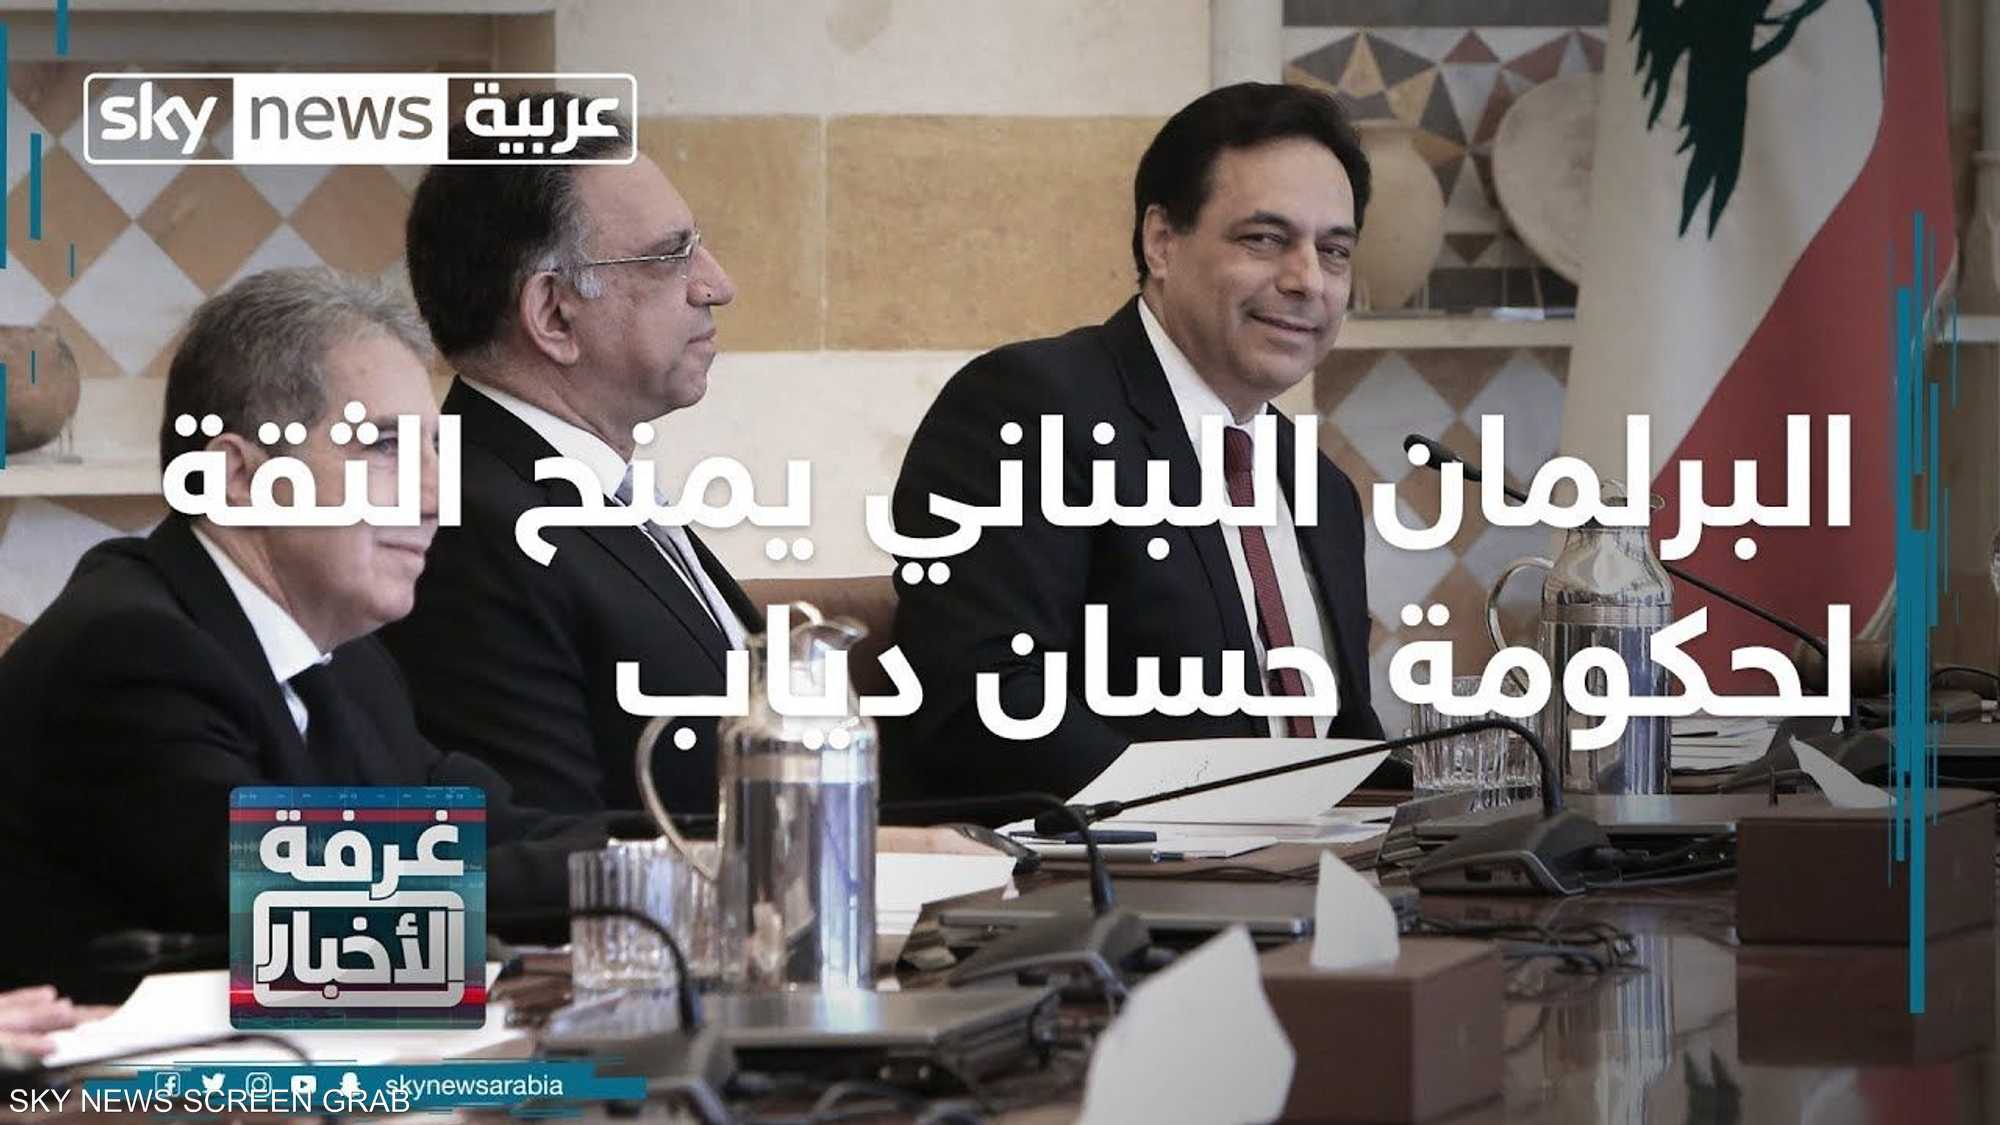 البرلمان اللبناني يمنح الثقة لحكومة حسان دياب